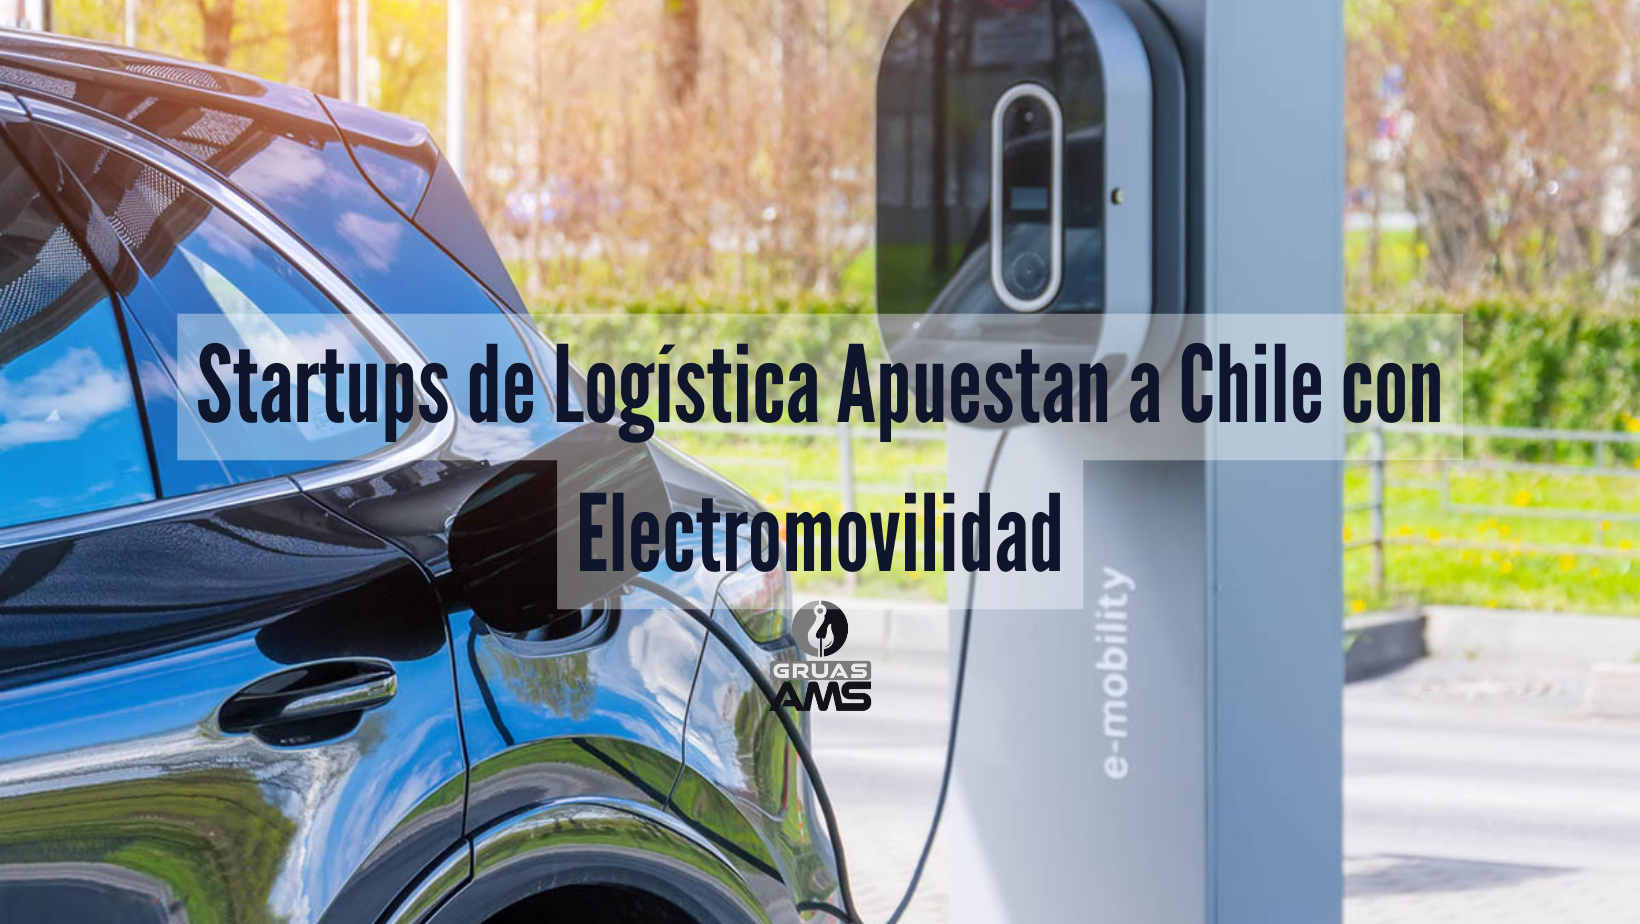 Startups de Logística Apuestan a Chile con Electromovilidad